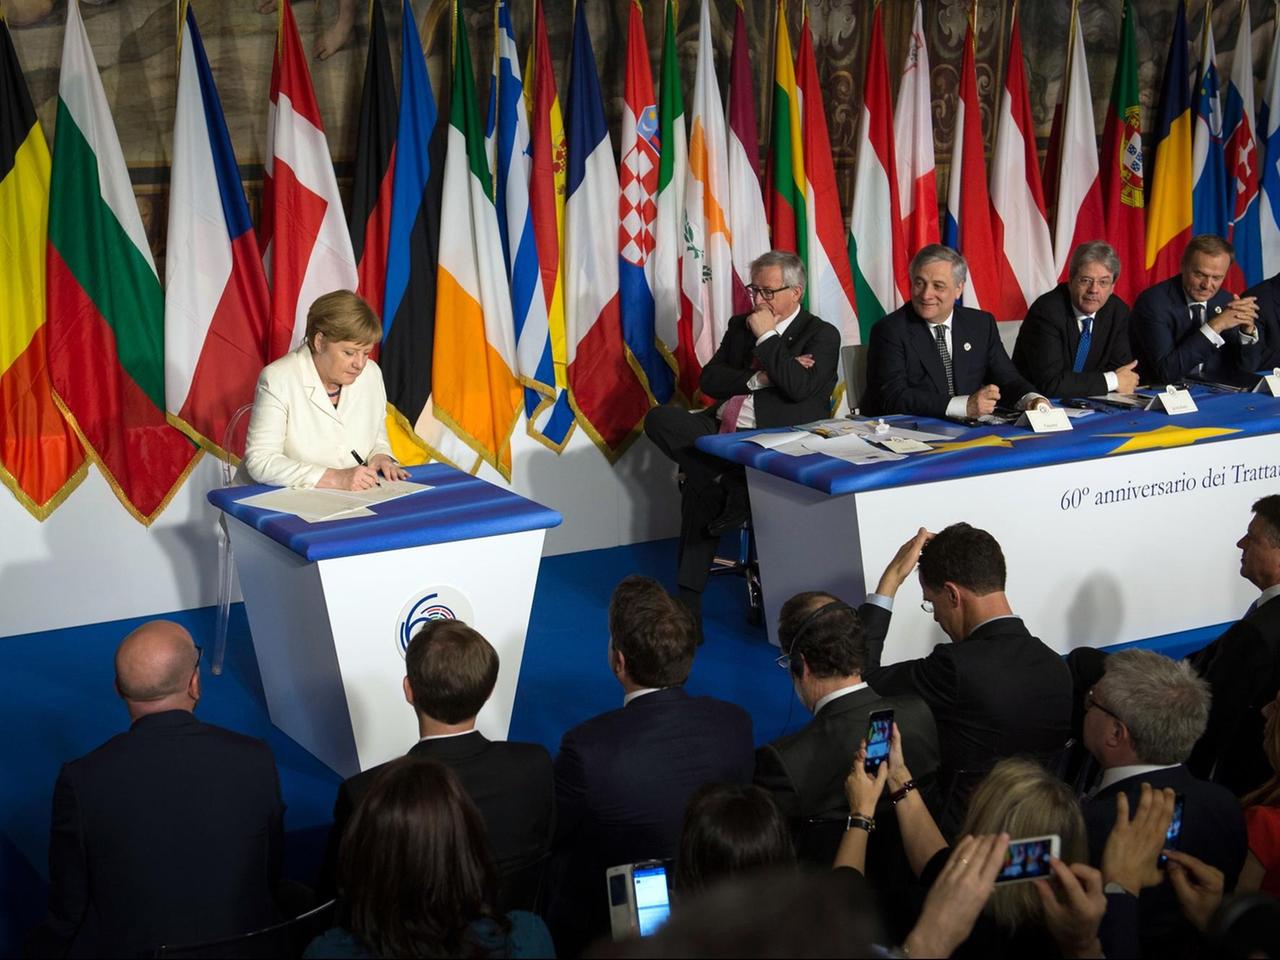 Bundeskanzlerin Angela Merkel (l) unterzeichnet am 25.03.2017 in Rom zum 60. Jubiläum der Römischen Verträge eine gemeinsame Erklärung der EU-Länder.